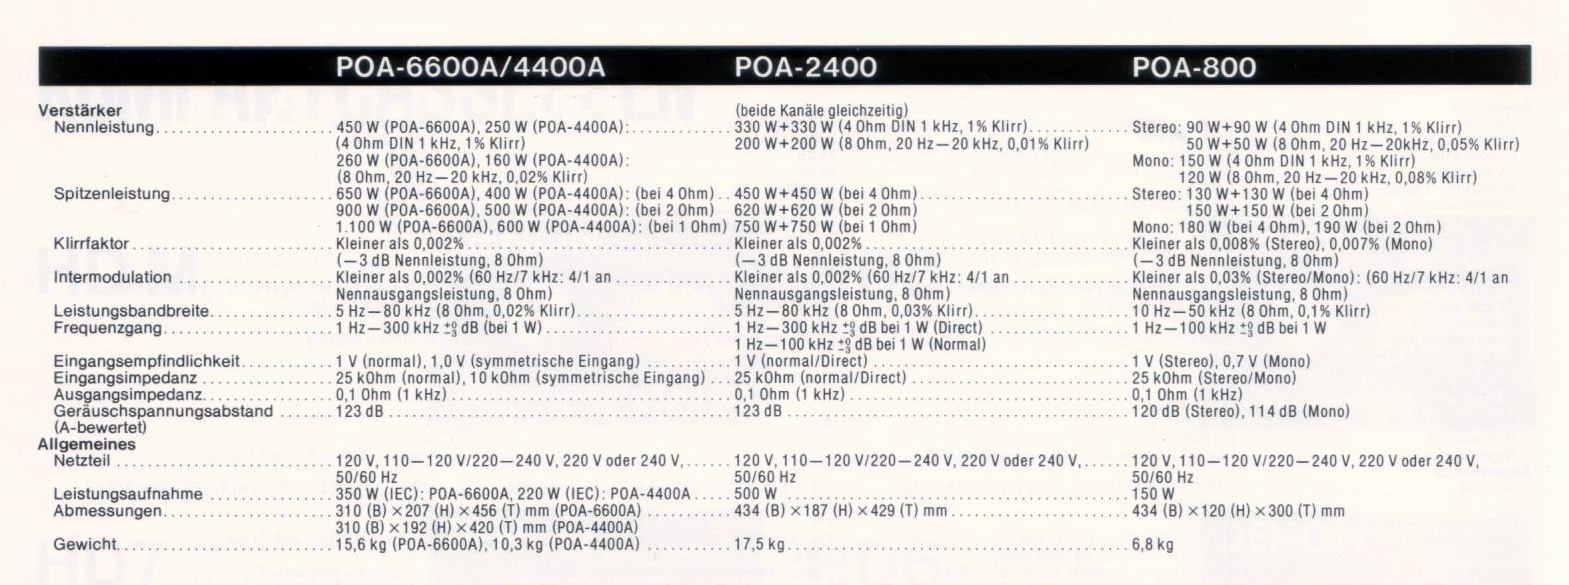 Denon POA-800-2400-4400-6600 A-Daten-1989.jpg